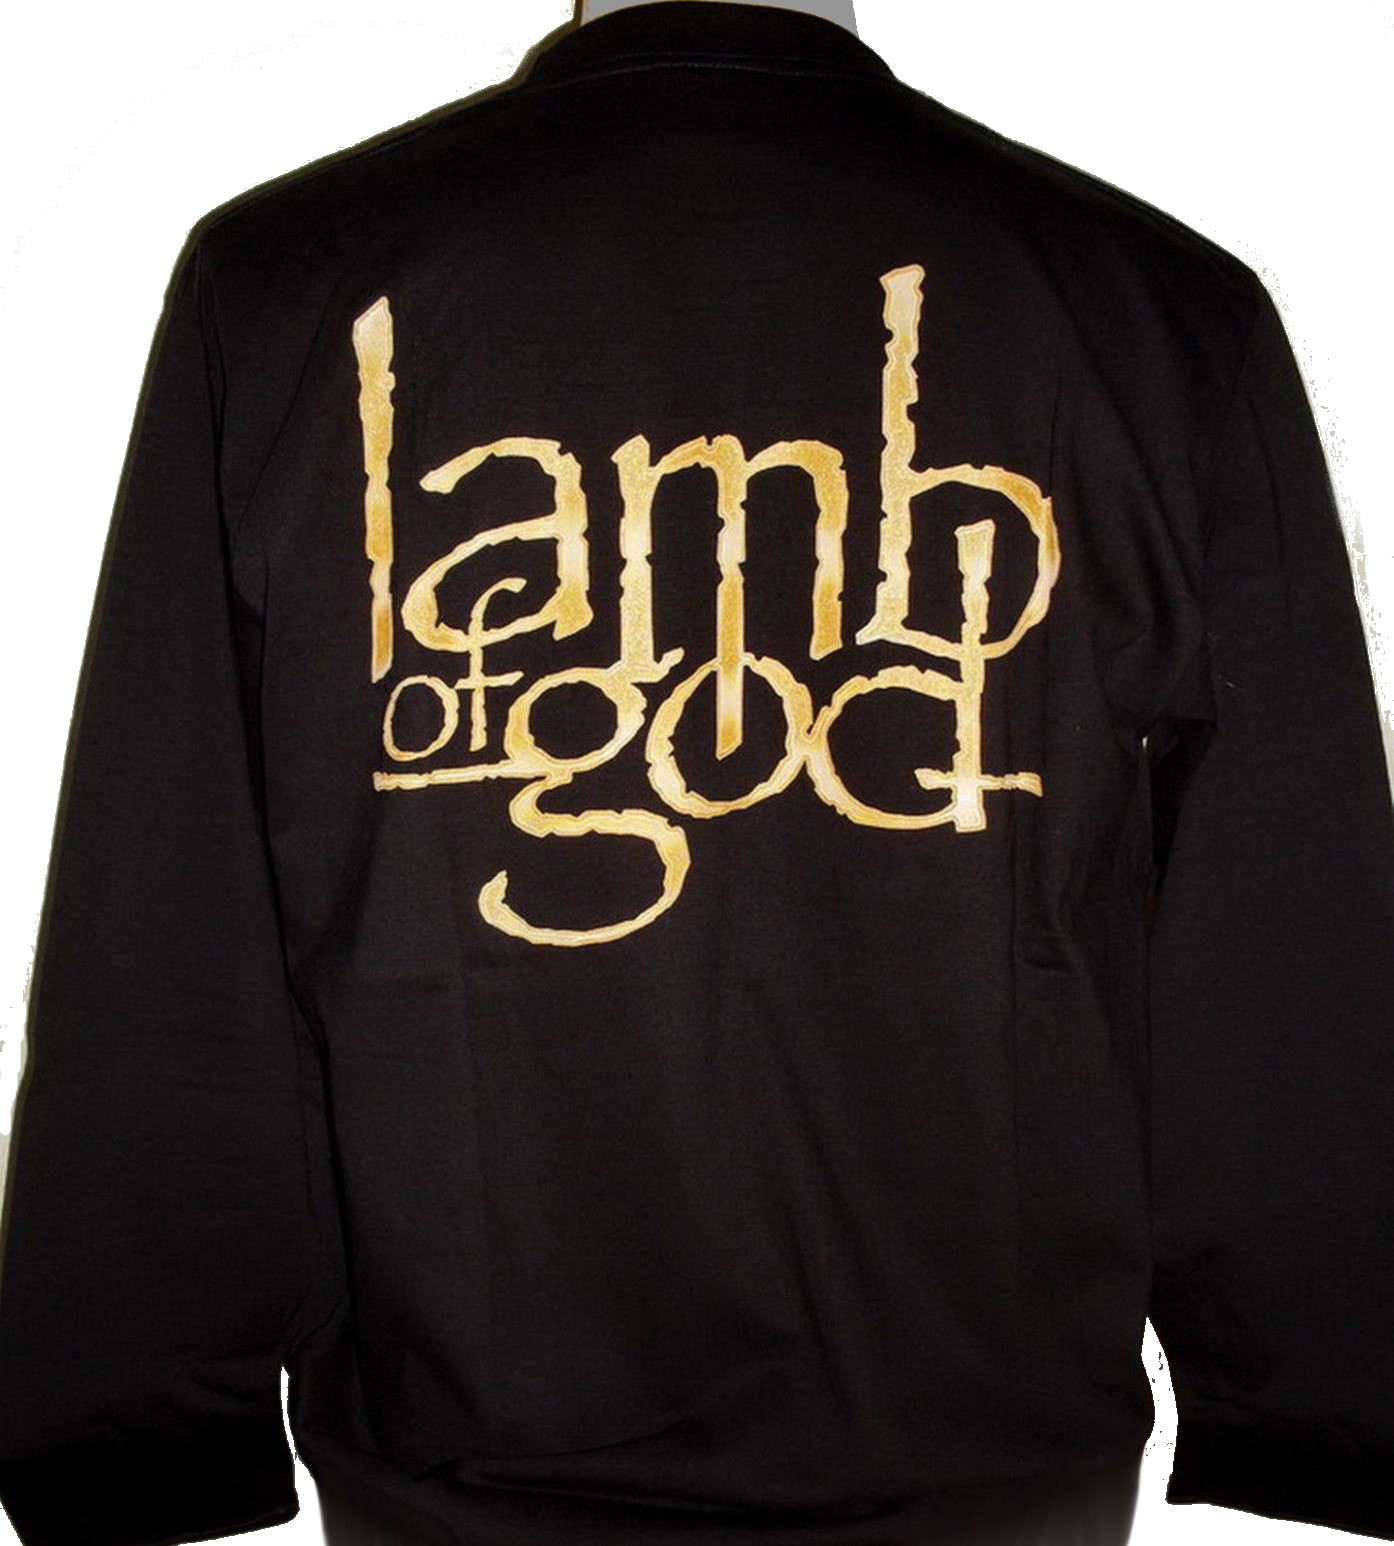 Lamb Of God long-sleeved t-shirt Sacrament size XL – RoxxBKK